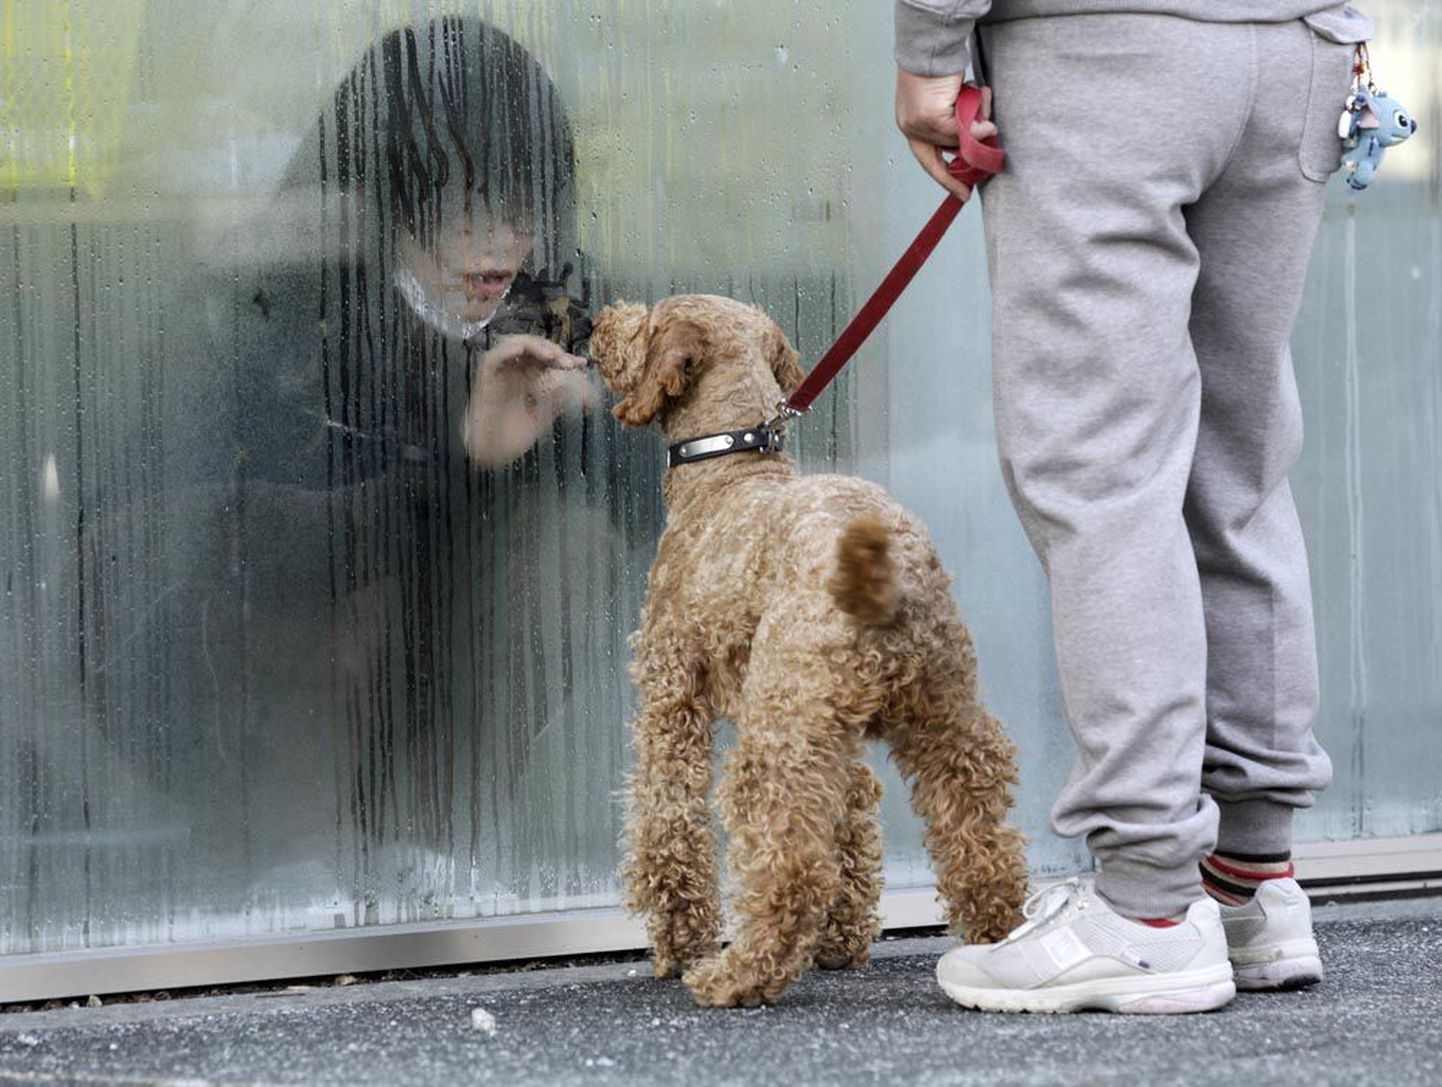 Kõrge radiatsioonitaseme tõttu piilub jaapanlanna oma koera läbi ajutise kontrollimiskeskuse klaasi Nihonmatsus.